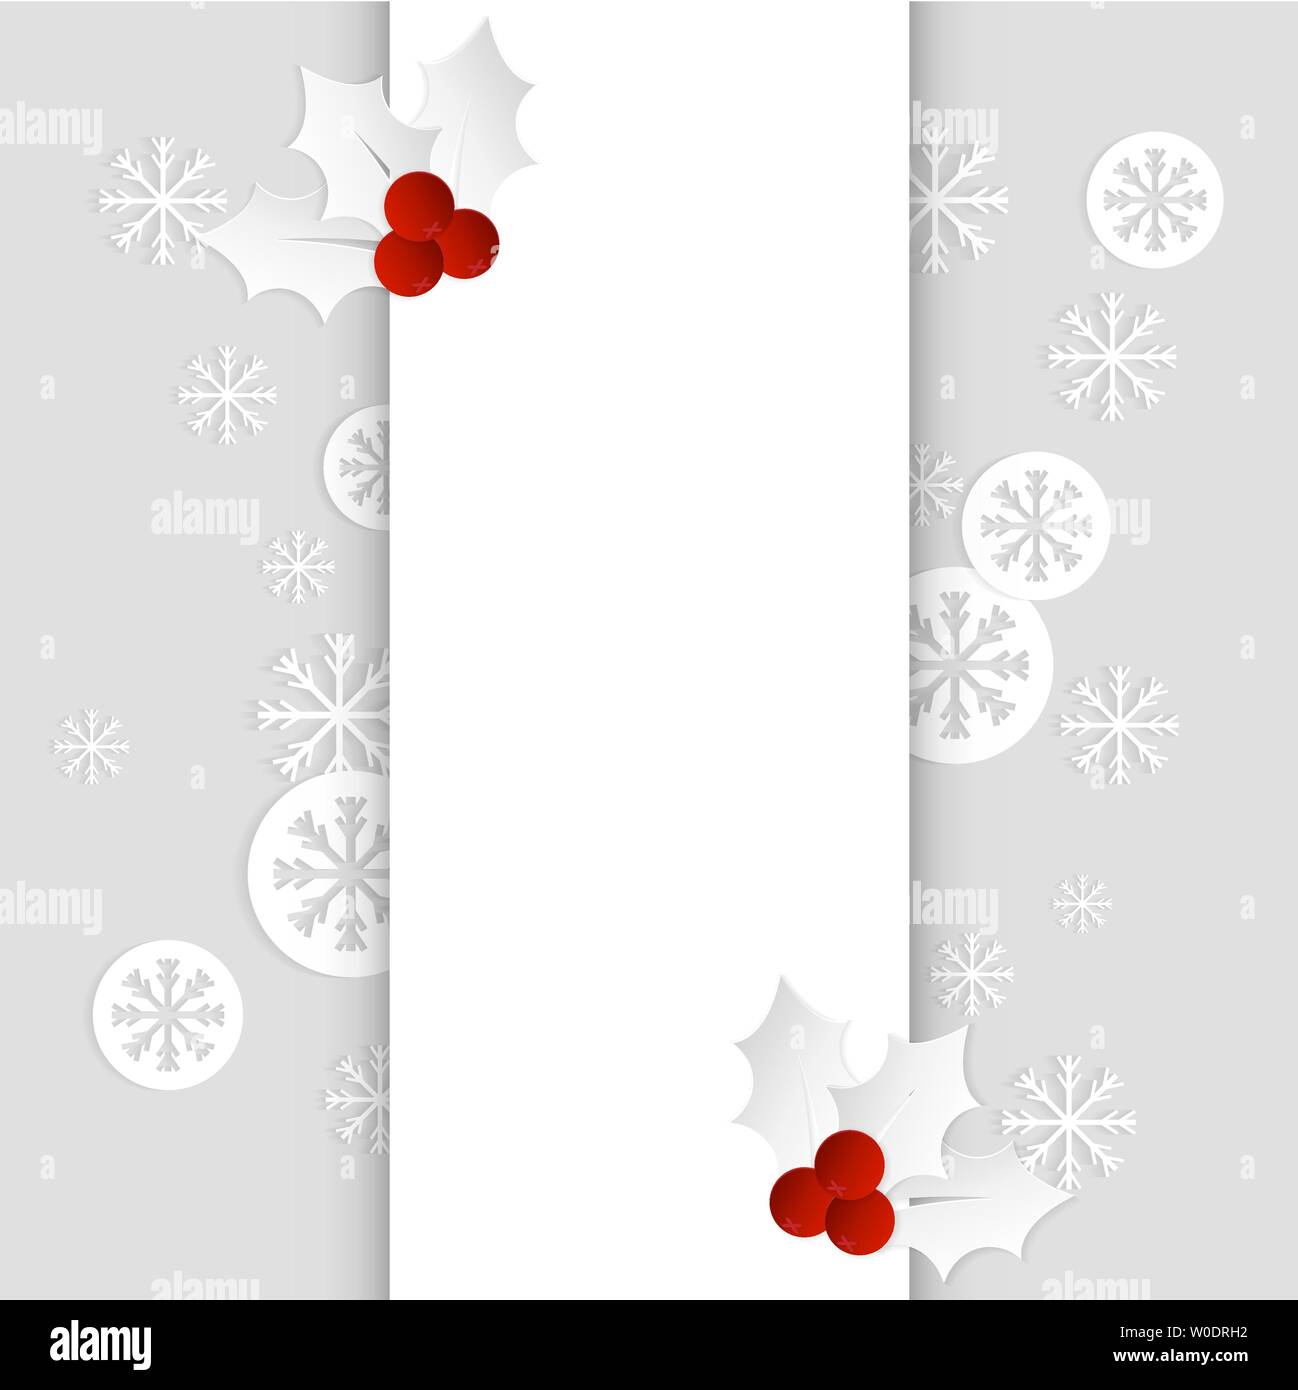 Weihnachtskarte mit Stechpalme und Schneeflocken vertikale Papier Vorlage Vektor Stock Vektor